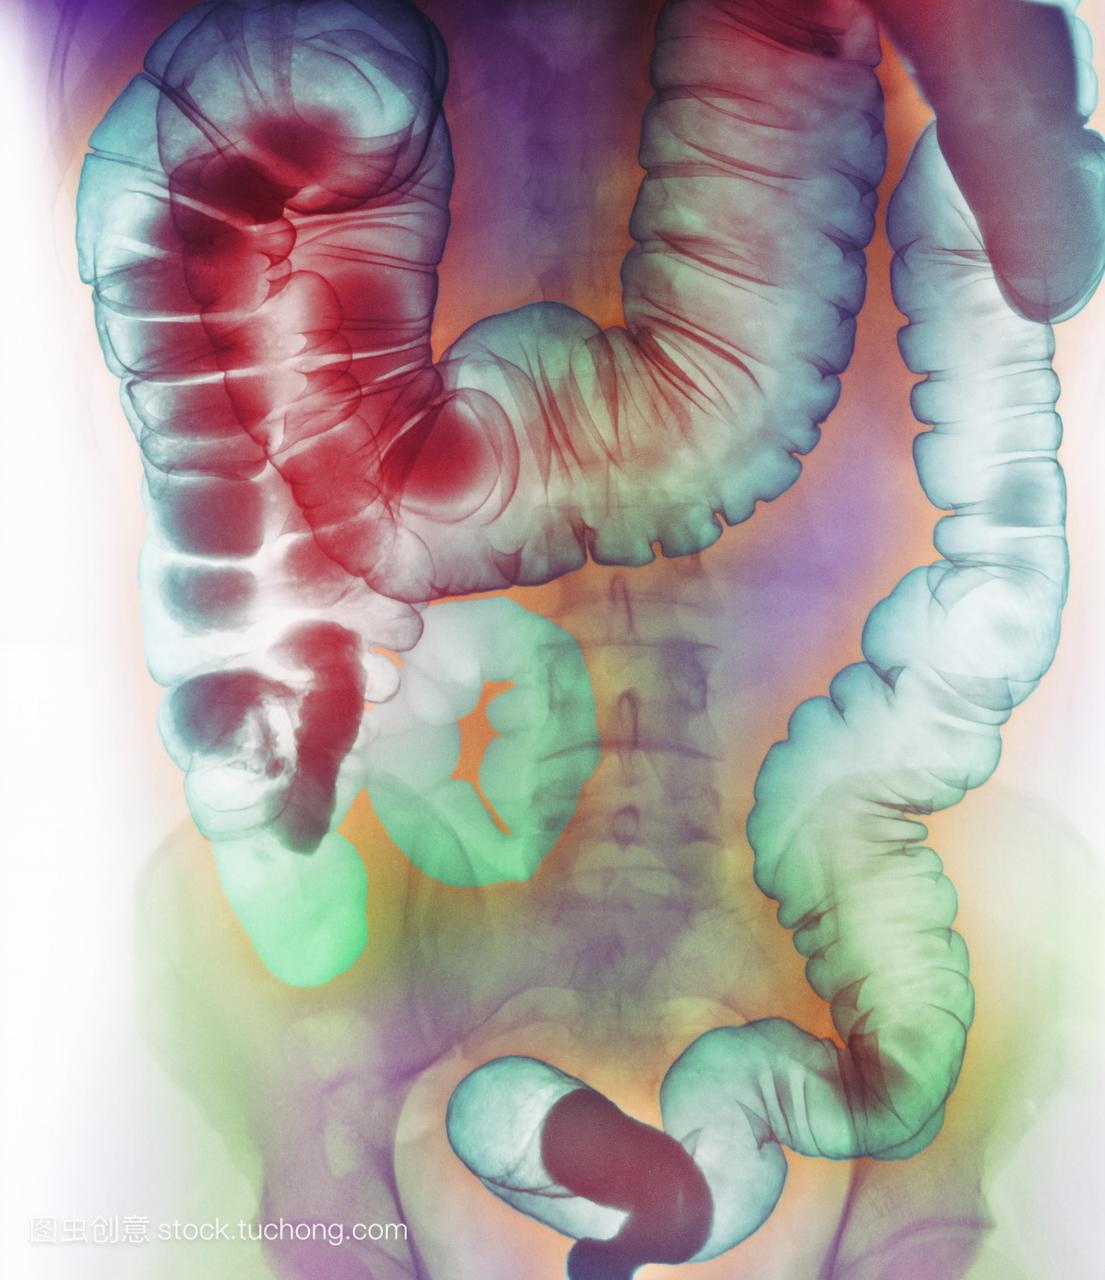 直肠炎。一名男性病人腹部的彩色钡灌肠x线,显